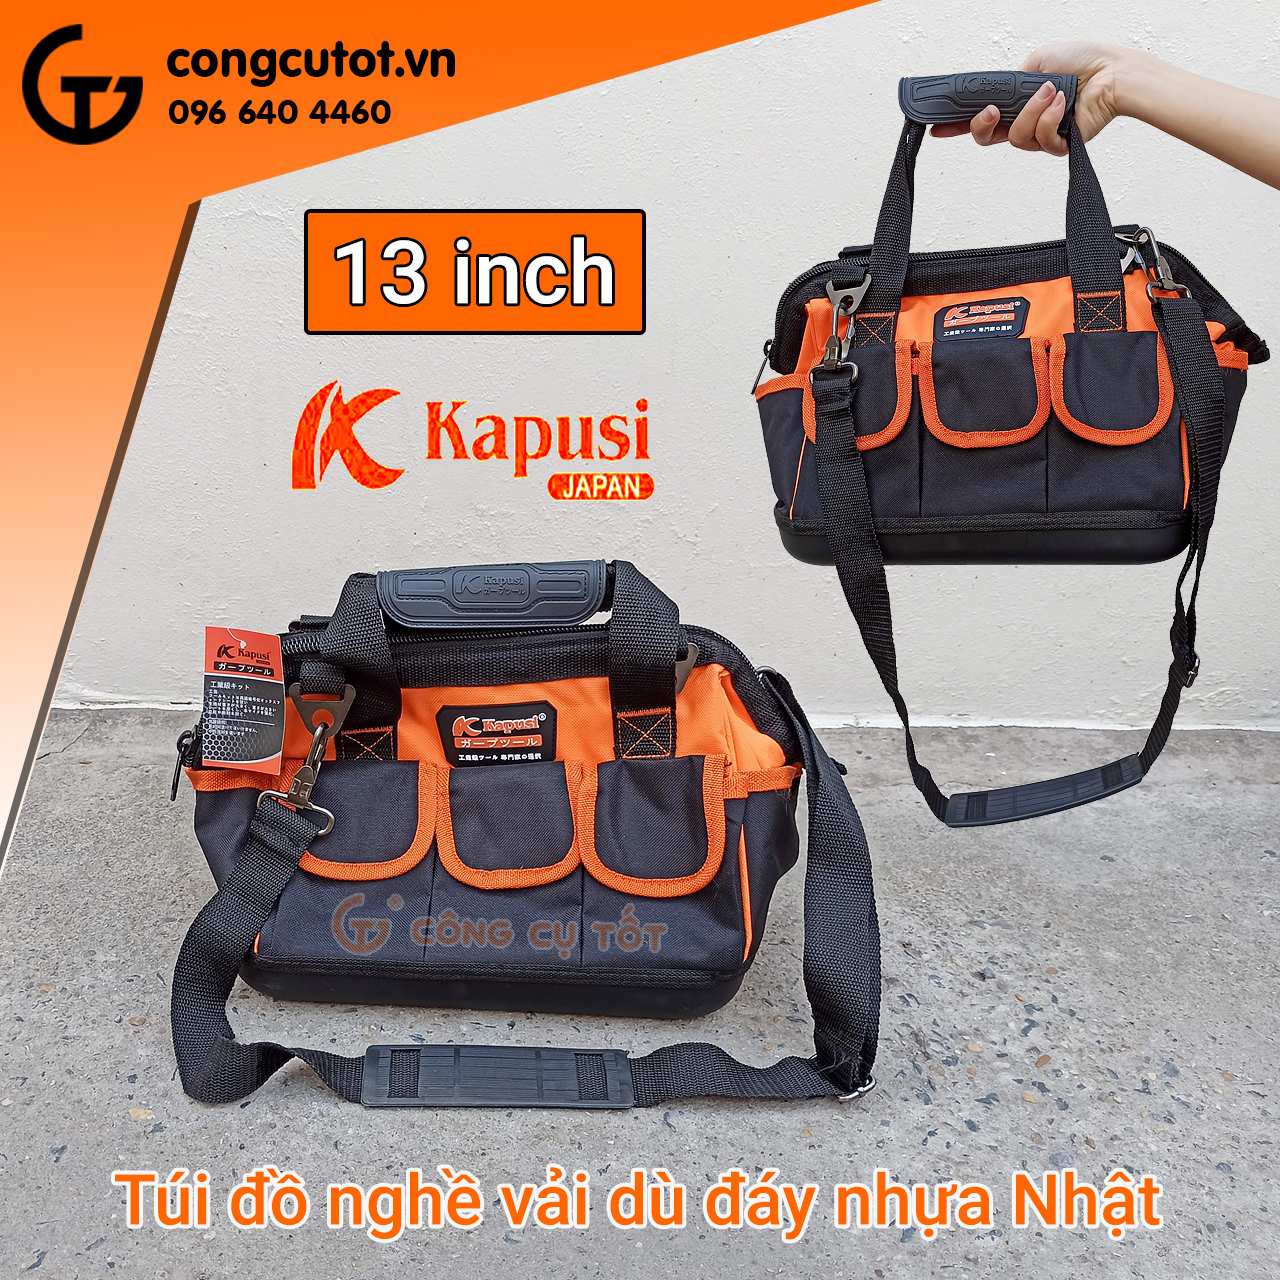 Túi đồ nghề 13 inch kèm 8 túi phụ bằng vải dù đáy nhựa cứng tới từ thương hiệu Kapusi của Nhật Bản